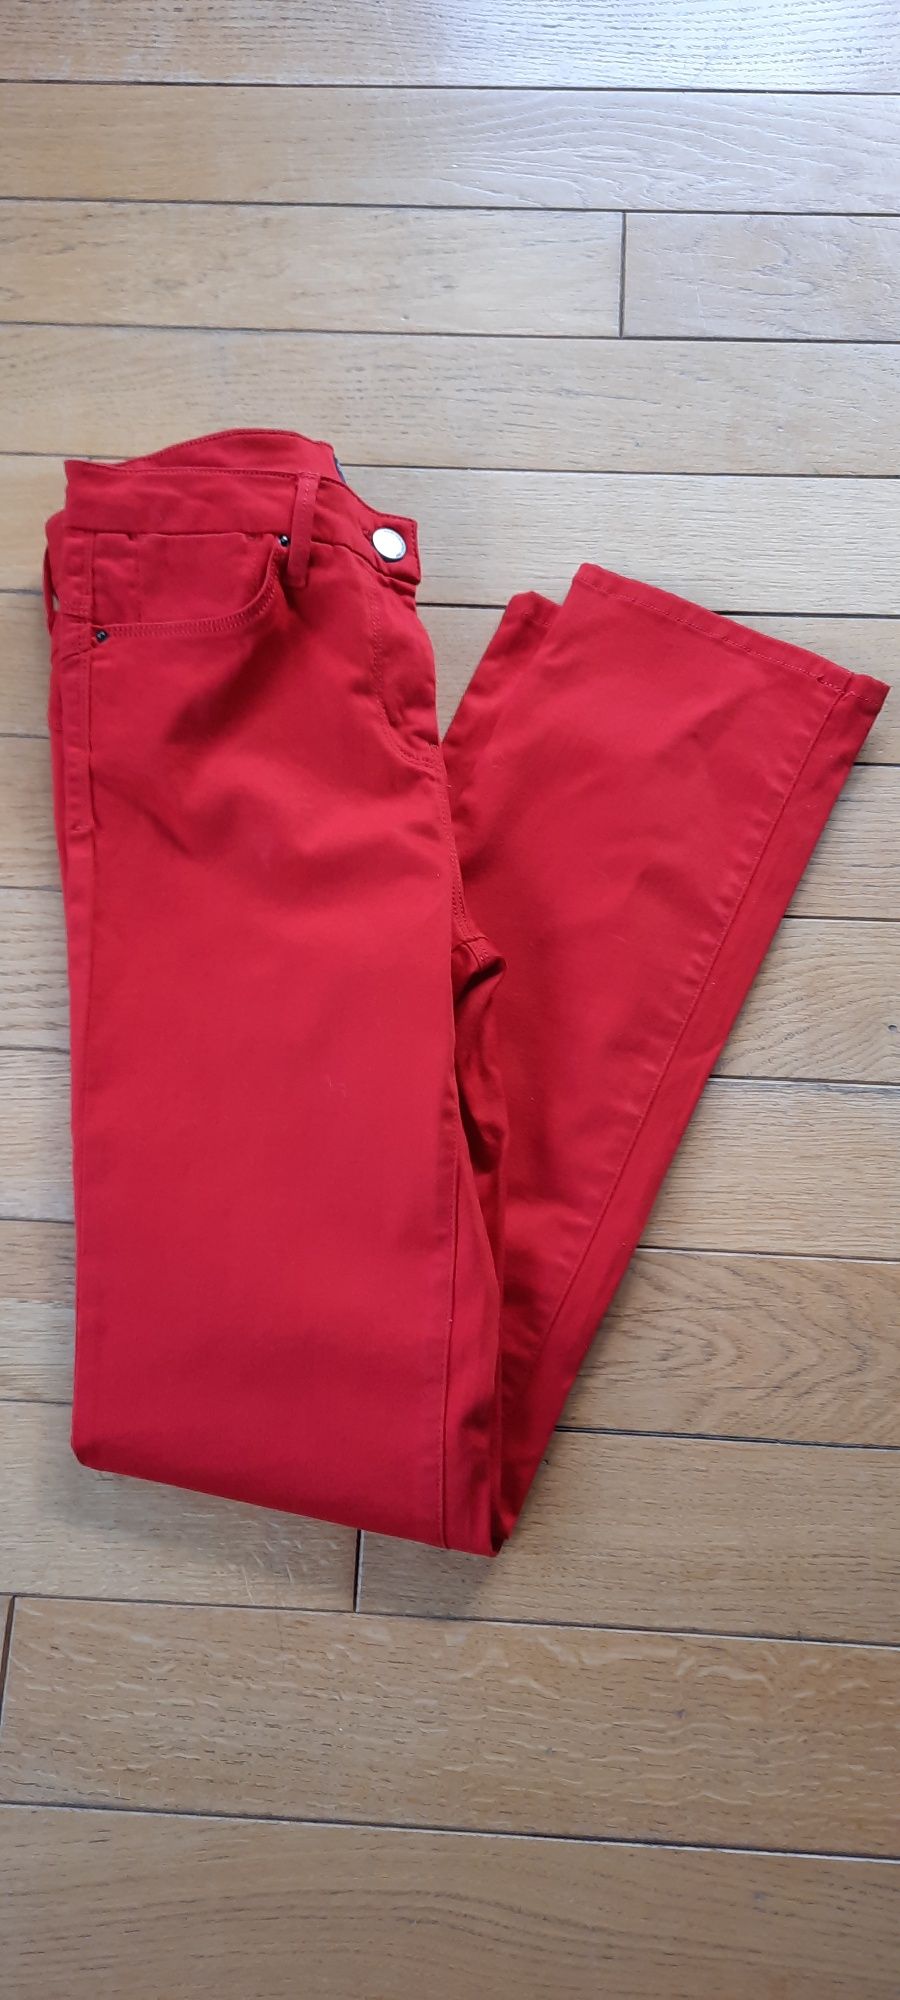 Sprzedam czerwone jensowe spodnie r.38